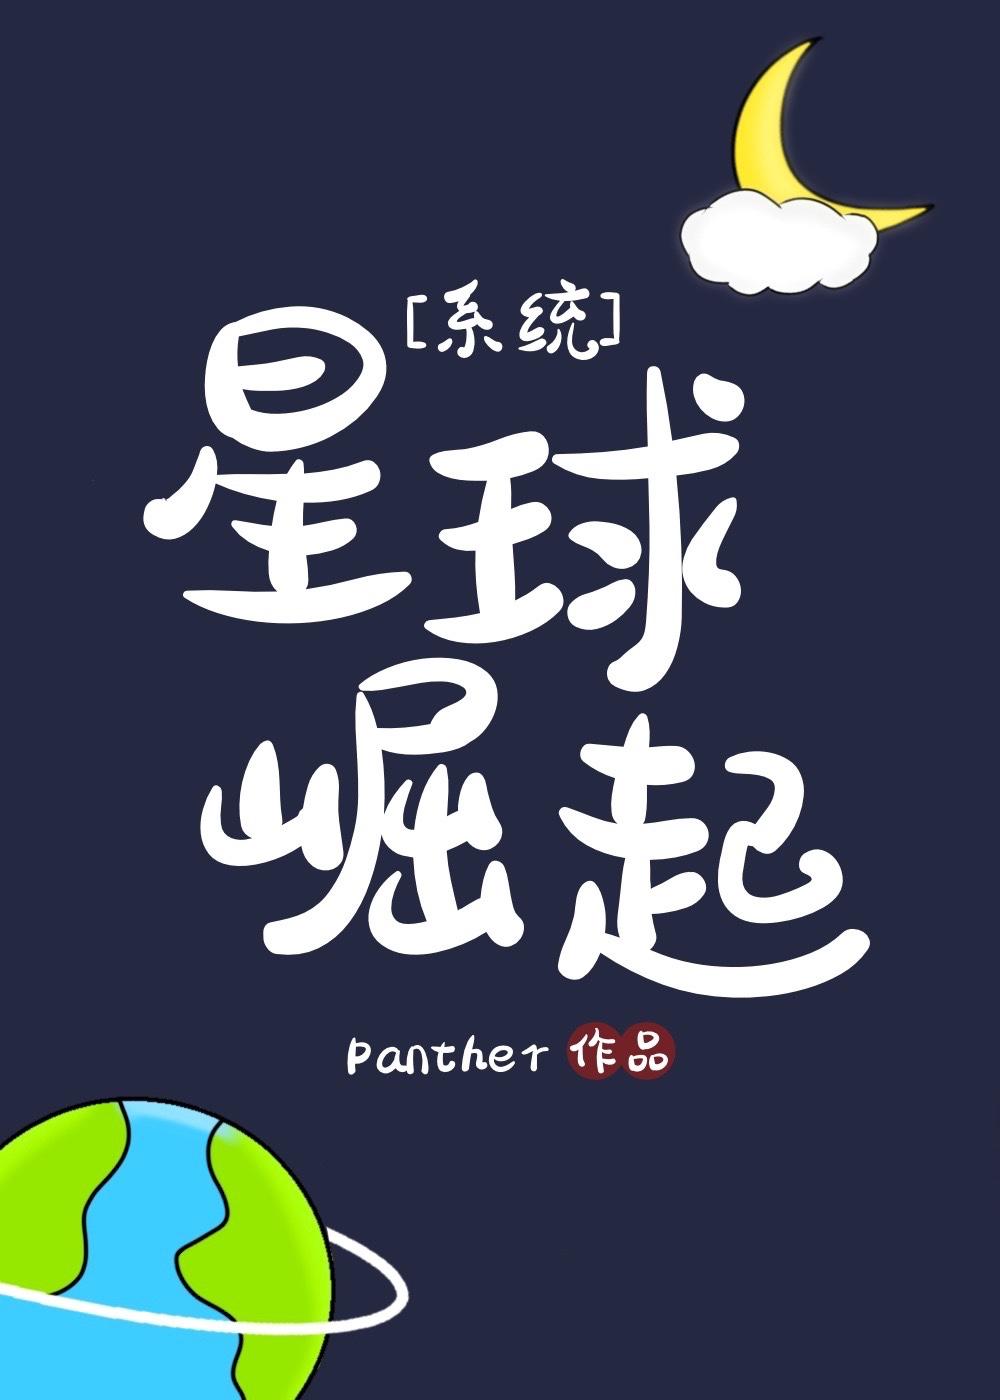 星球崛起系统panther晋江